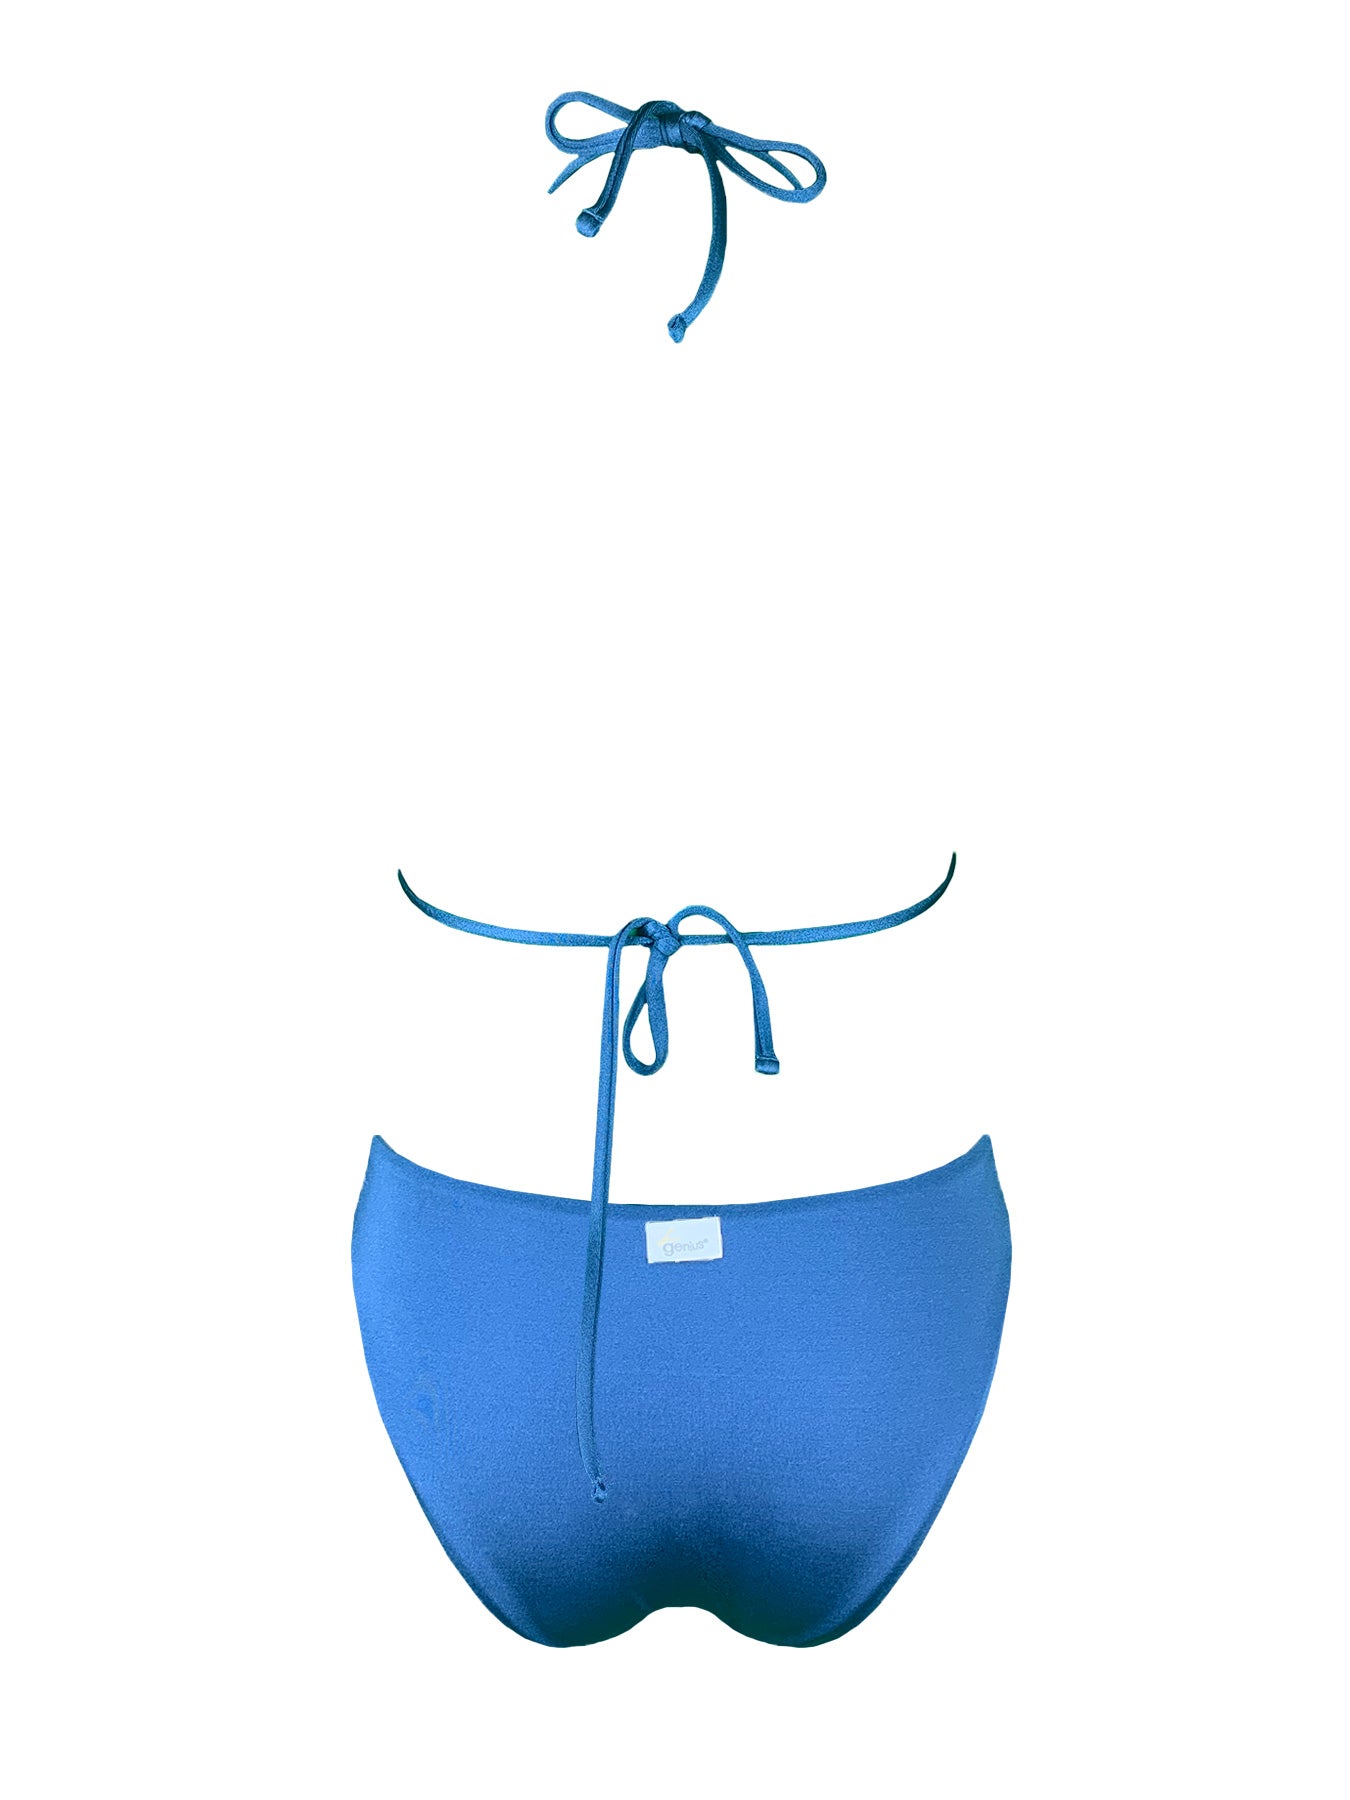 Bikini Triangolo Paillettes Blu Malibù Genius - Bikini D'amare Riccione